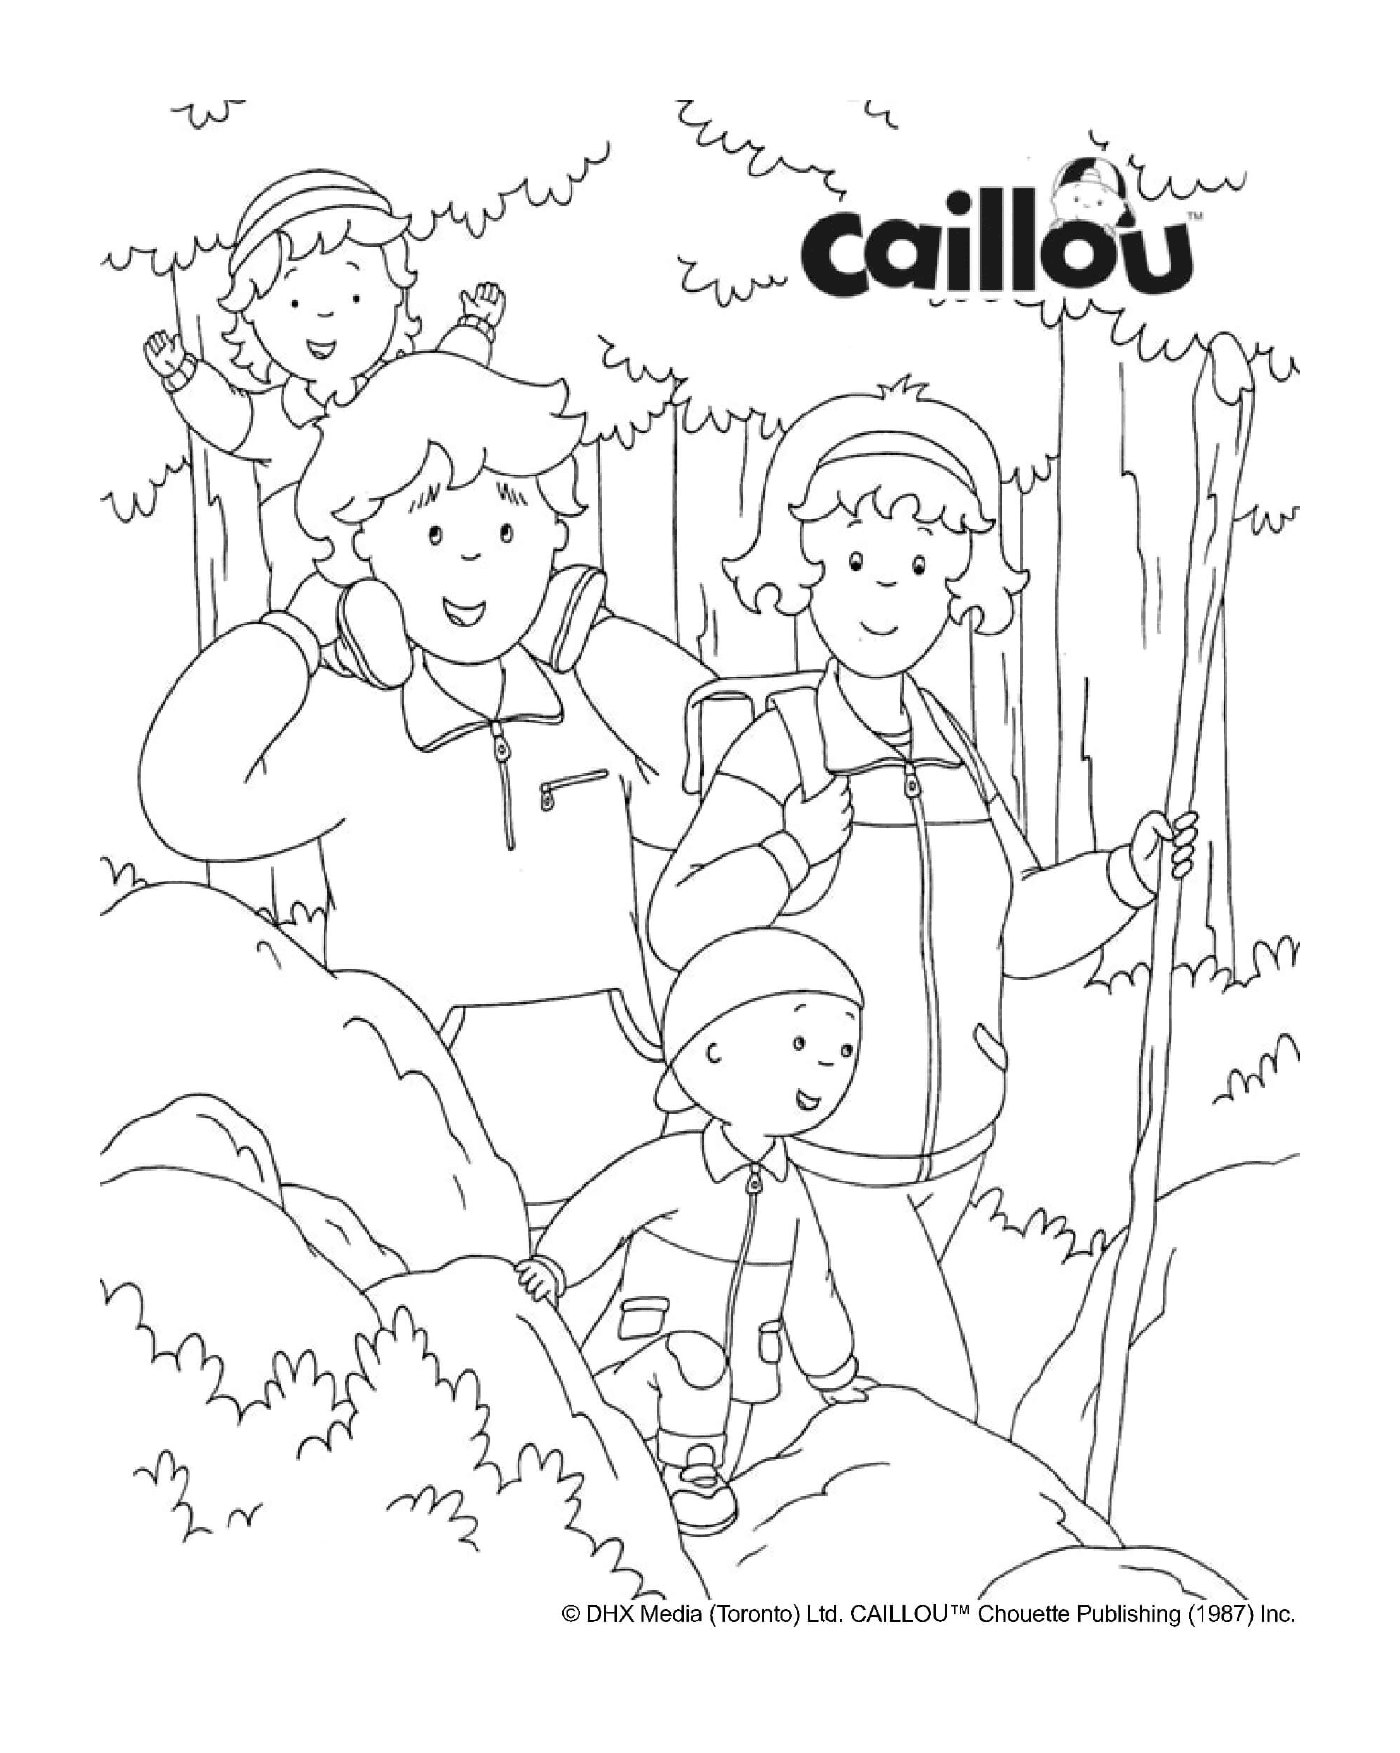  Eine Familienwanderung im Herbst mit Caillou 